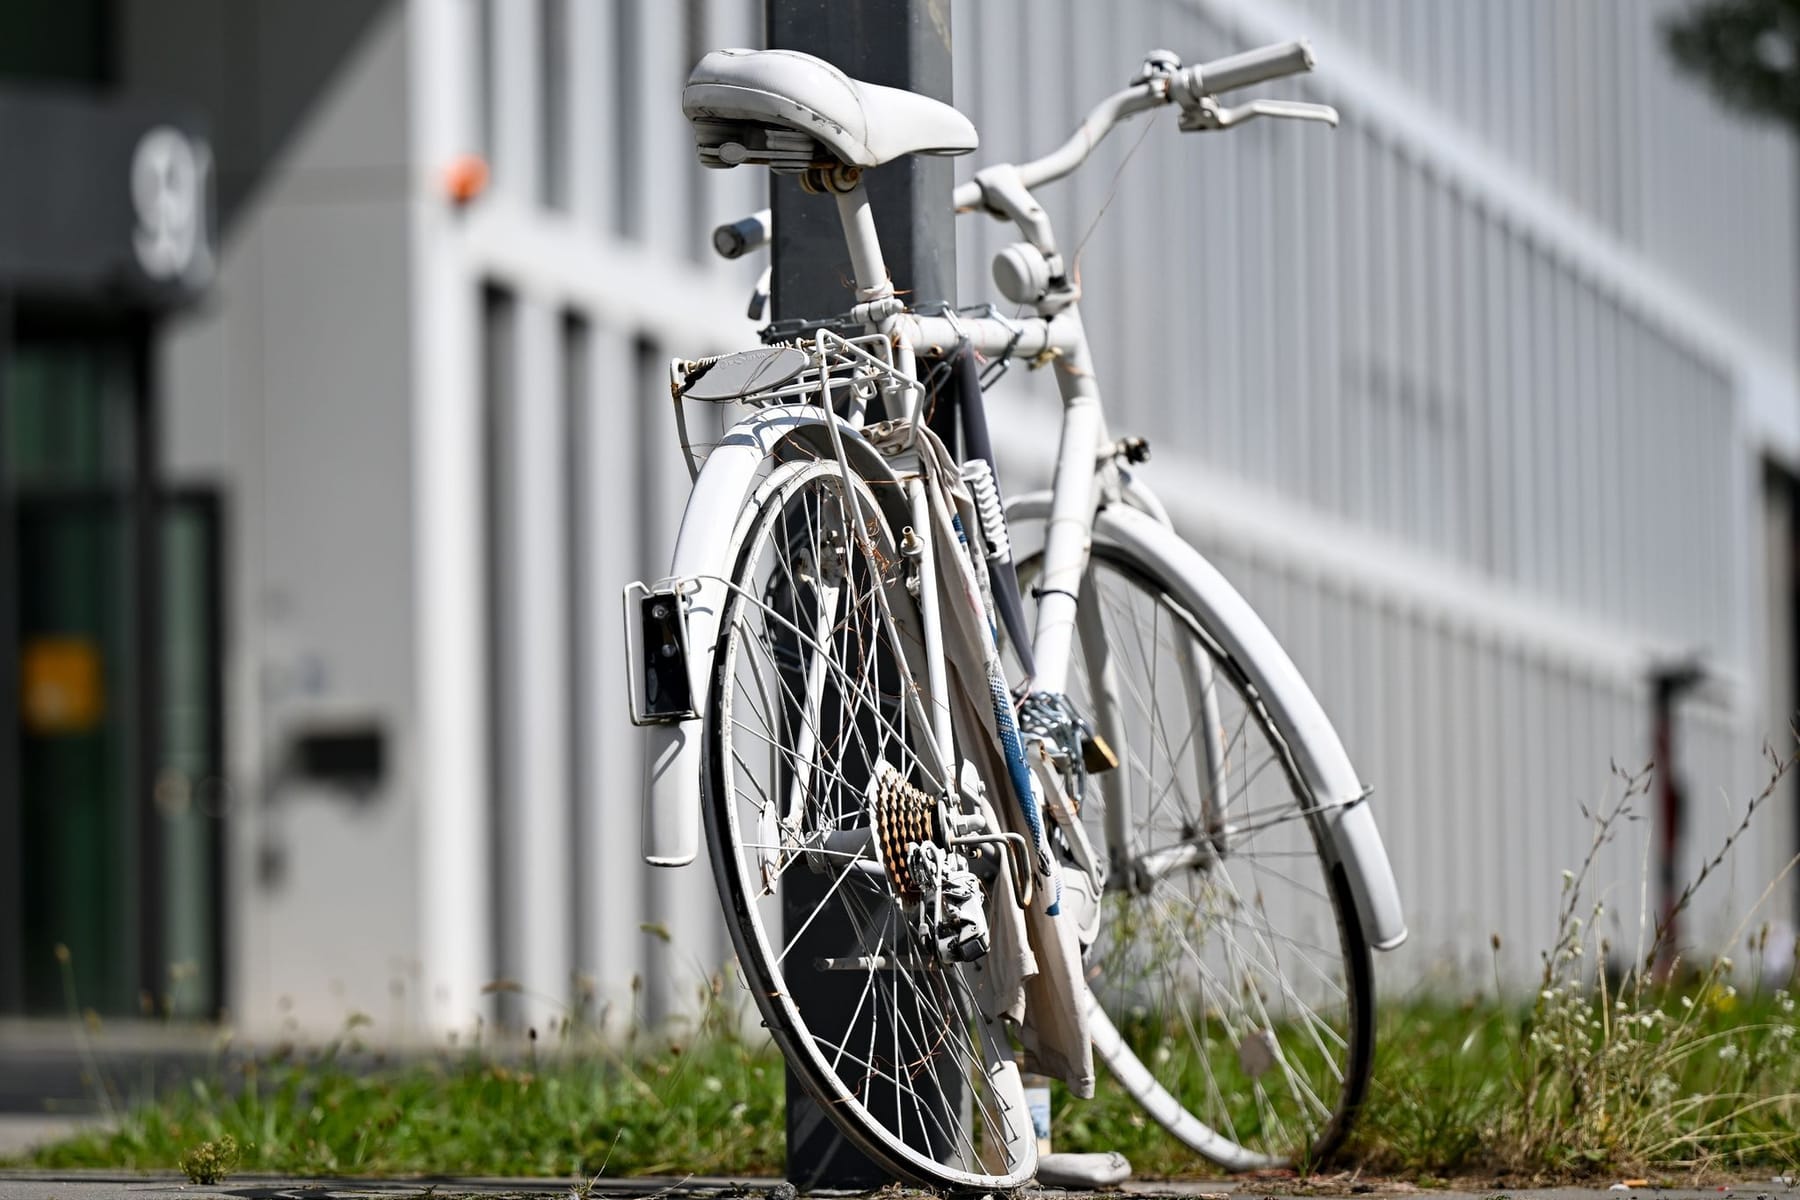 Fahrräder dürfen bald Blinker bekommen: Das plant die Bundesregierung